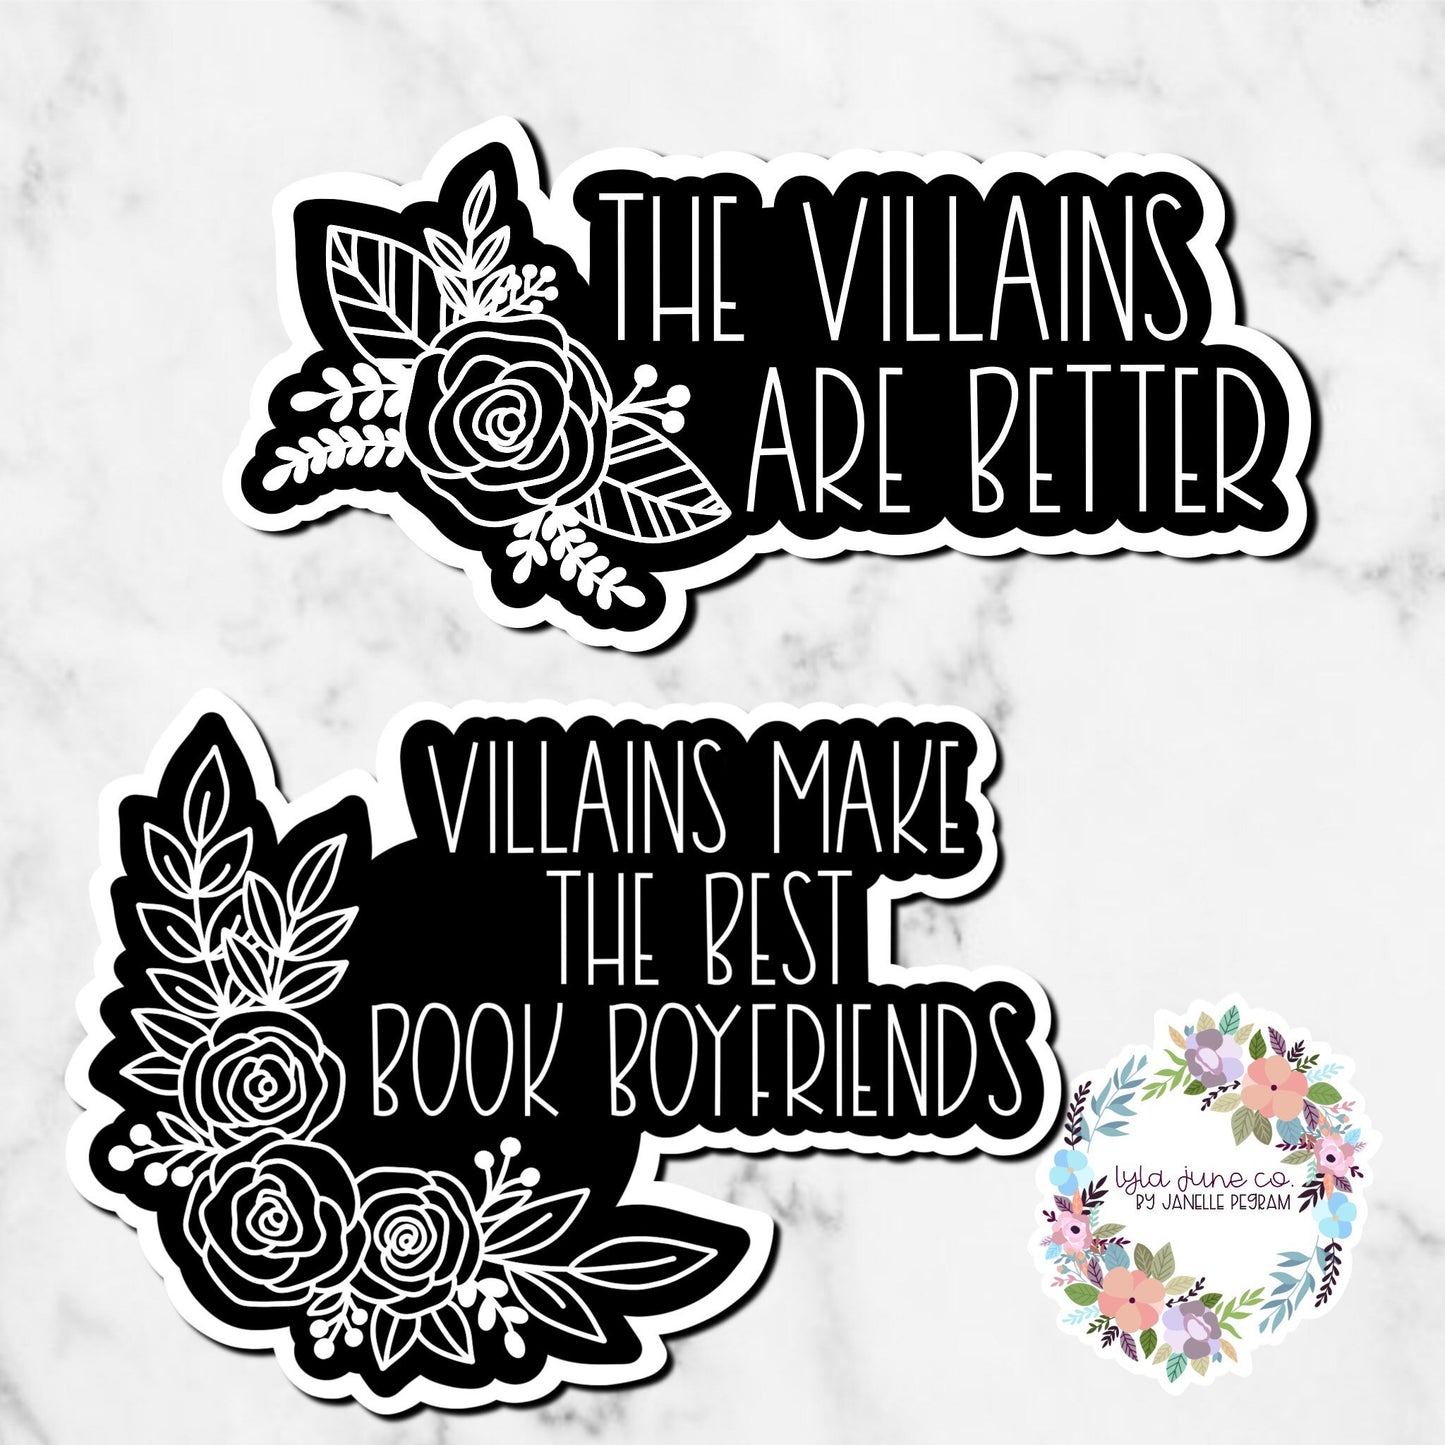 Villains make the best book boyfriends/ the villains are better sticker